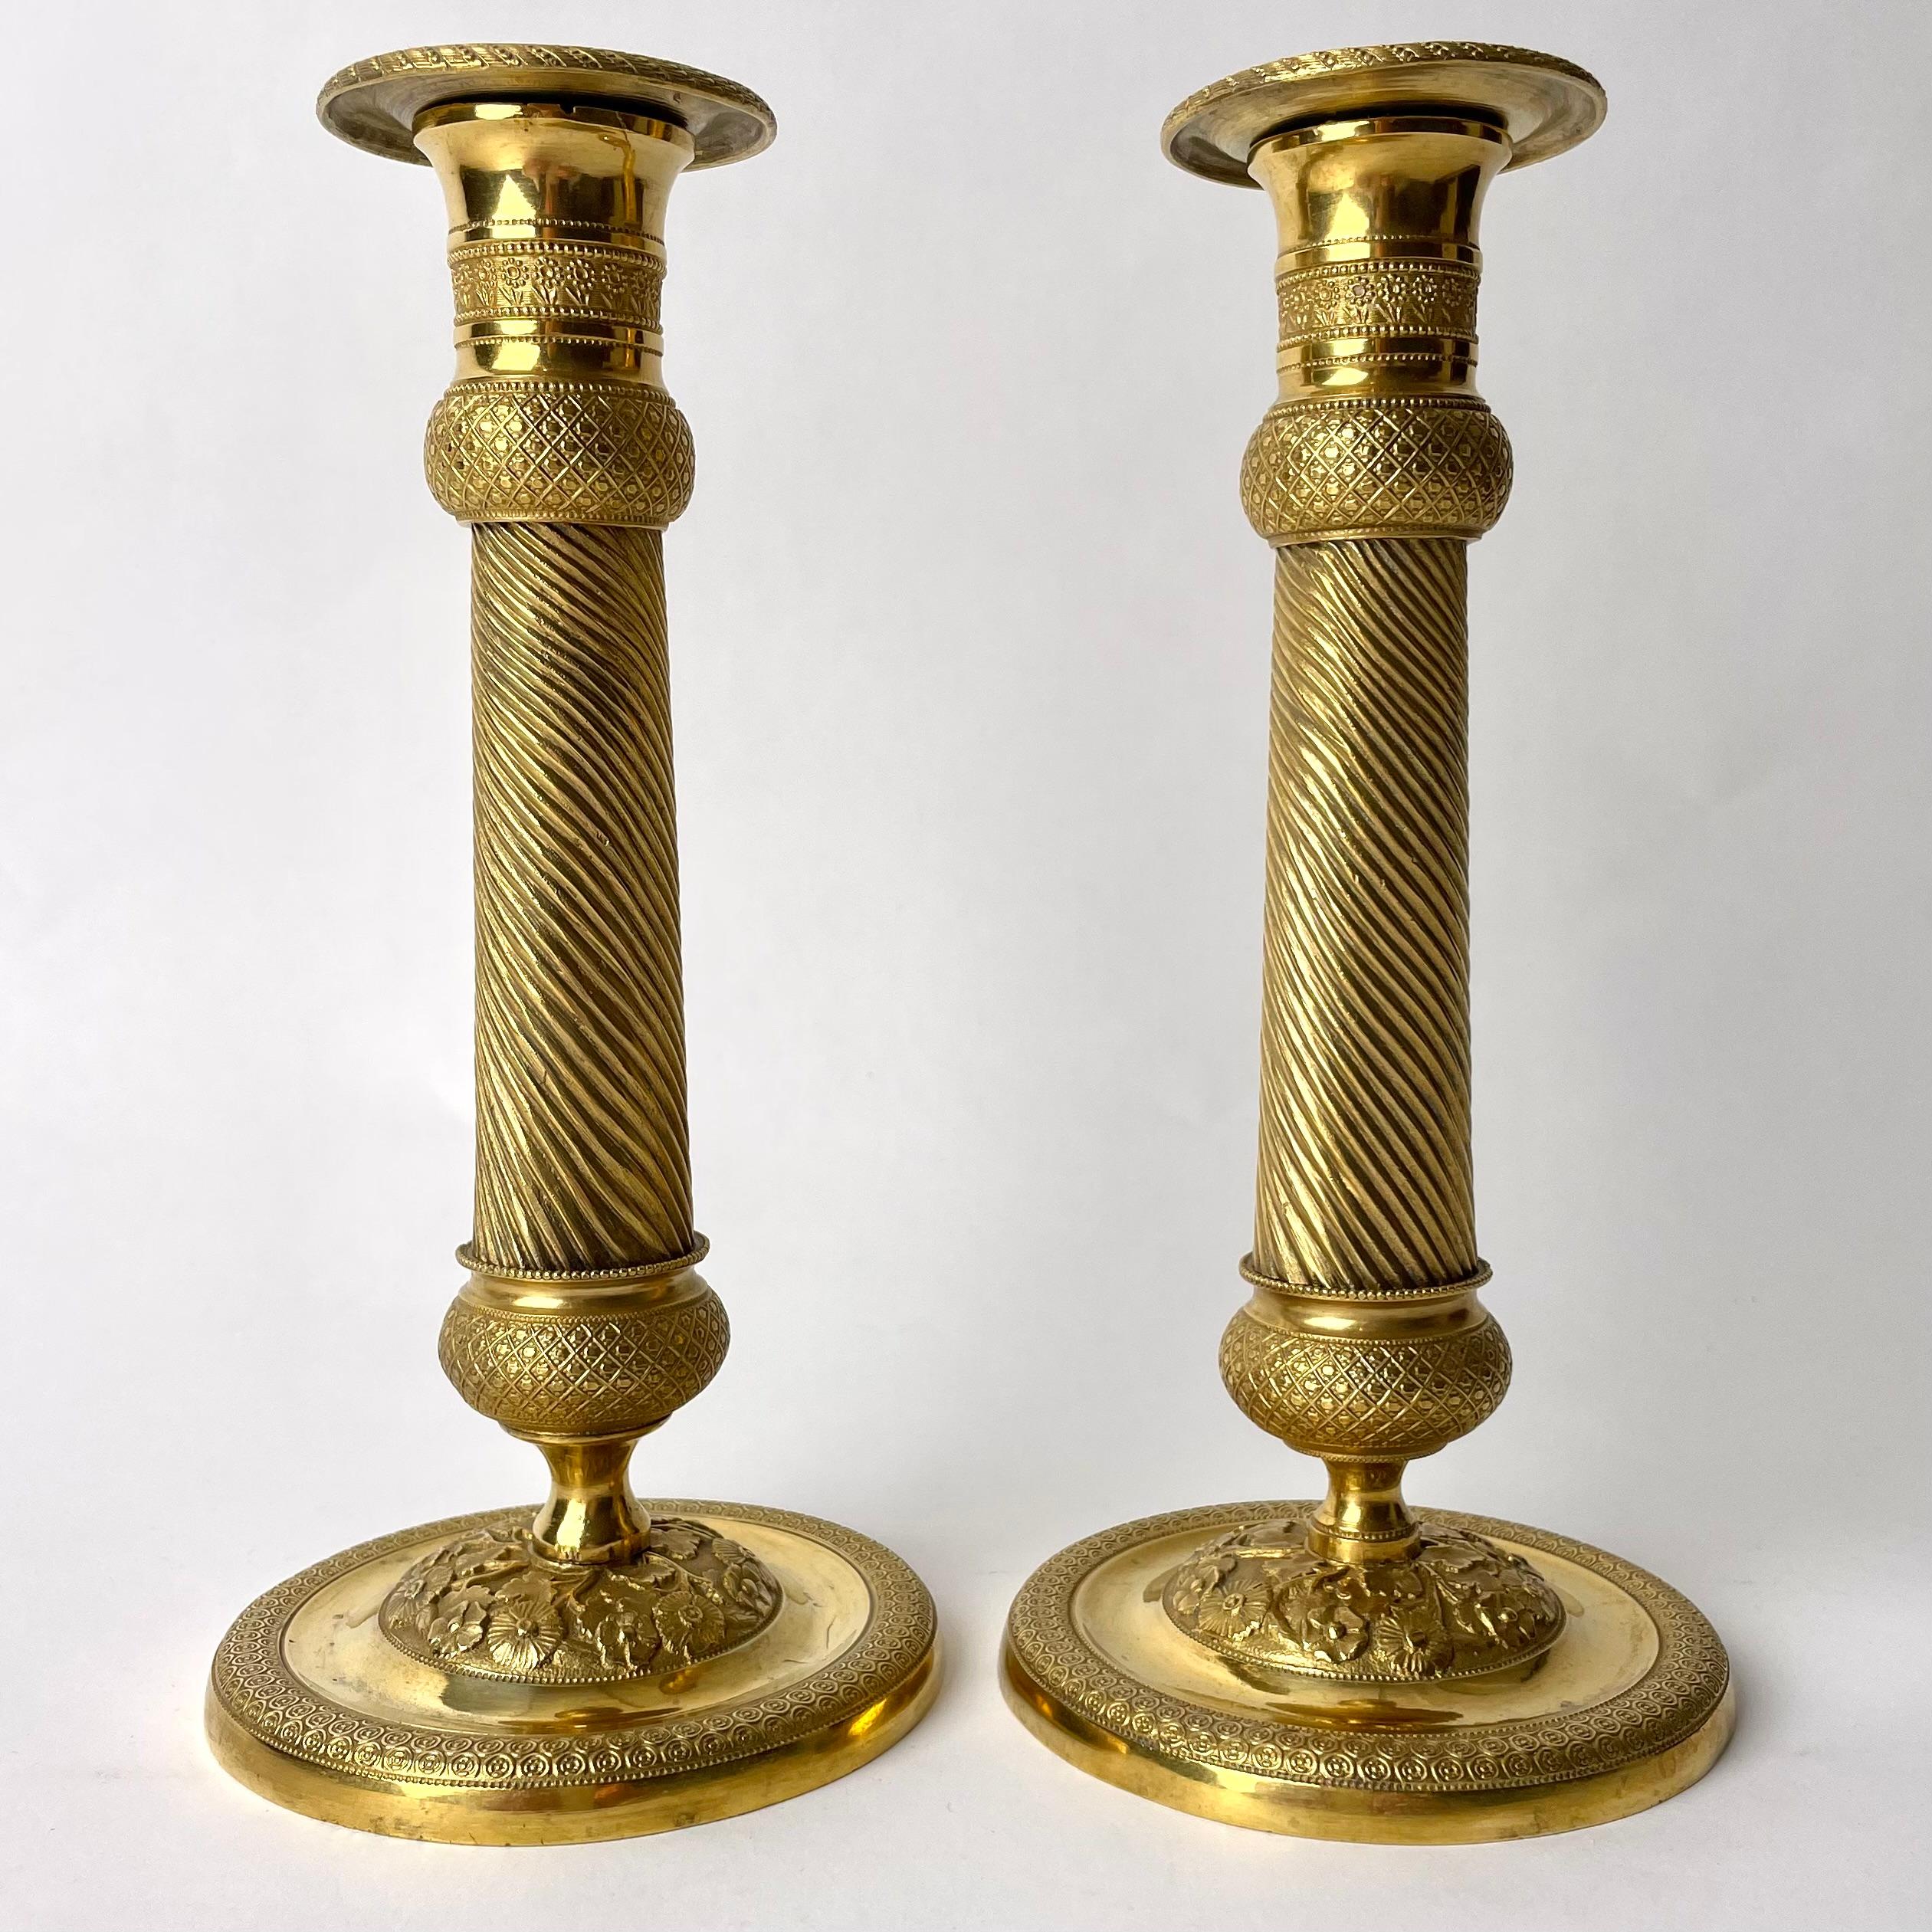  Ein Paar vergoldete französische Empire-Kerzenleuchter mit charmantem Dekor aus den 1820er Jahren. Wunderschön verziert mit Blumen und anderen Dekorationen aus dem Kaiserreich.

Abnutzung entsprechend dem Alter und dem Gebrauch 